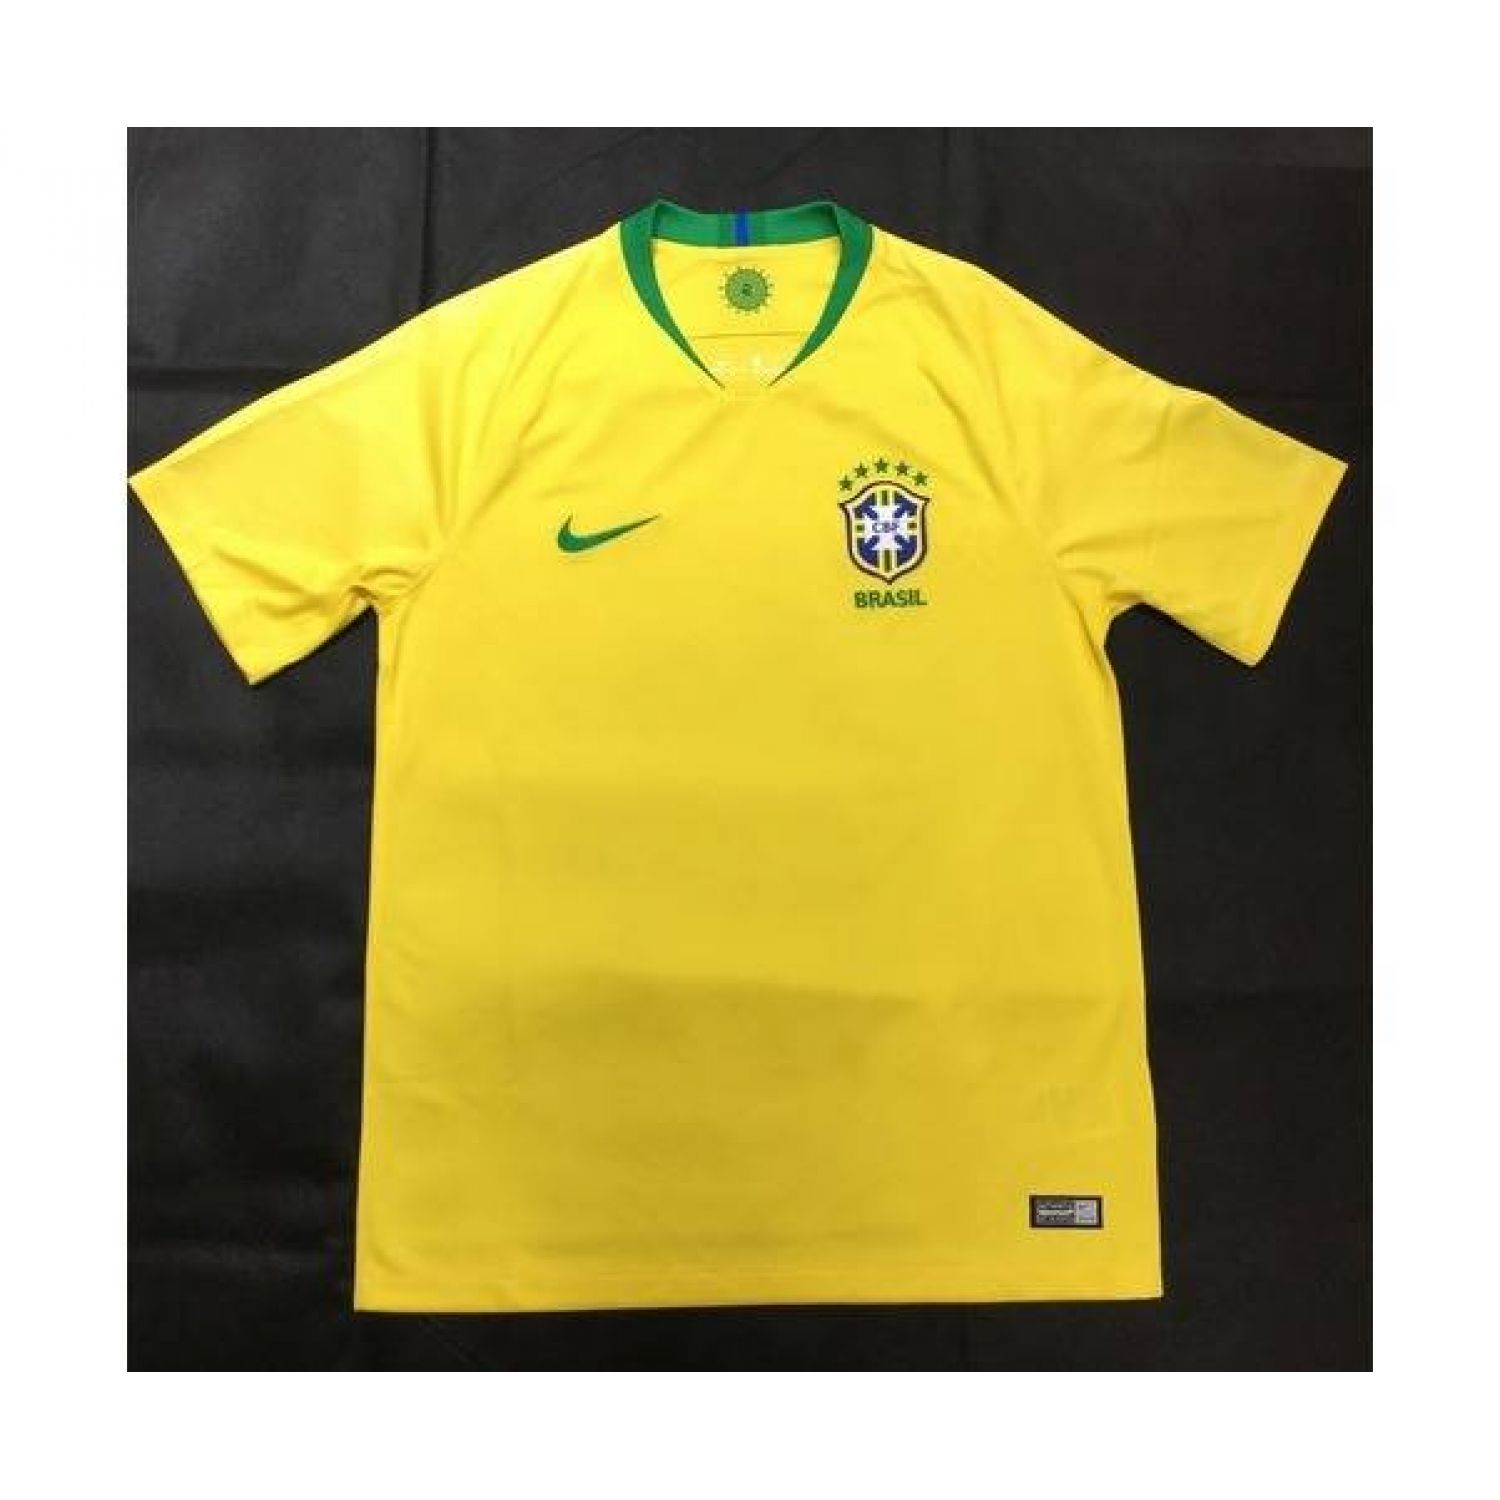 Nike サッカーユニフォーム イエロー ブラジル代表18 3856 749 トレファクonline